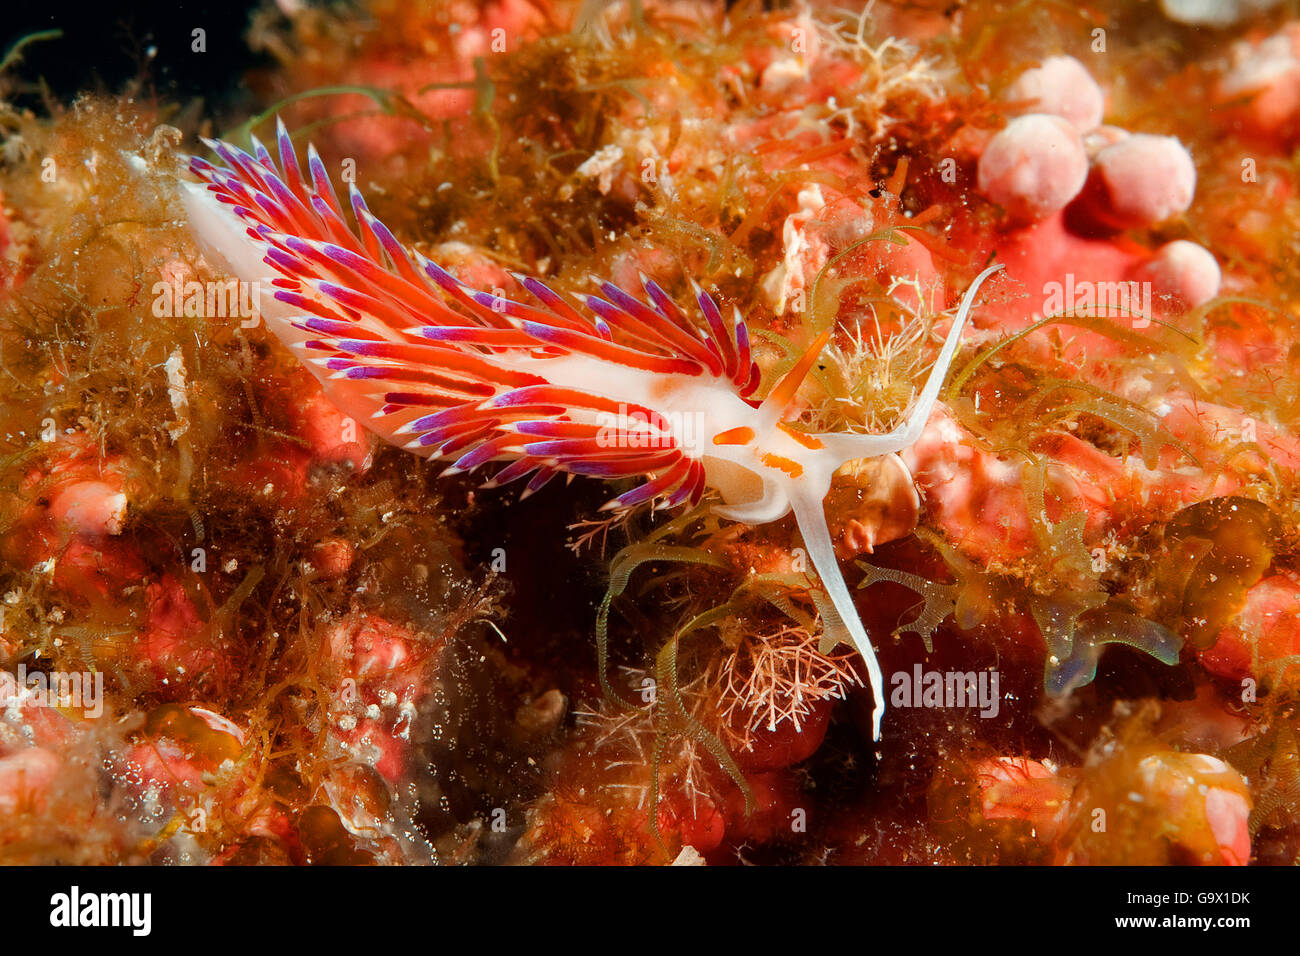 tricolor nudibranch, cratena sea slug, mediterranean / (Cratena peregrina) Stock Photo